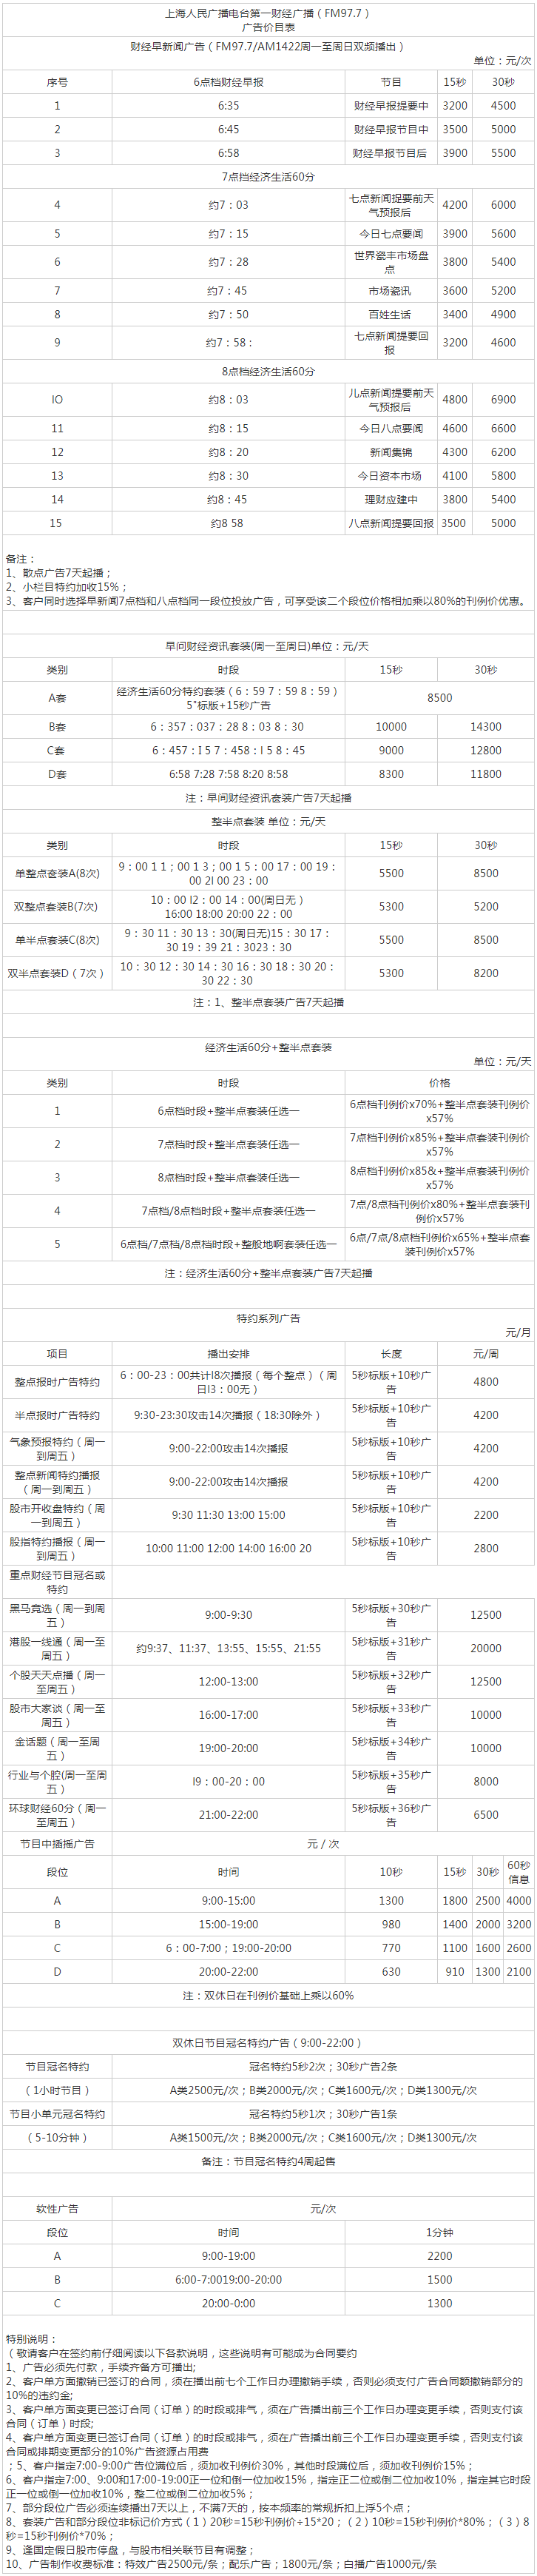 2012上海人民广播电台第一财经 AM1422_FM97.7广告报价表.png